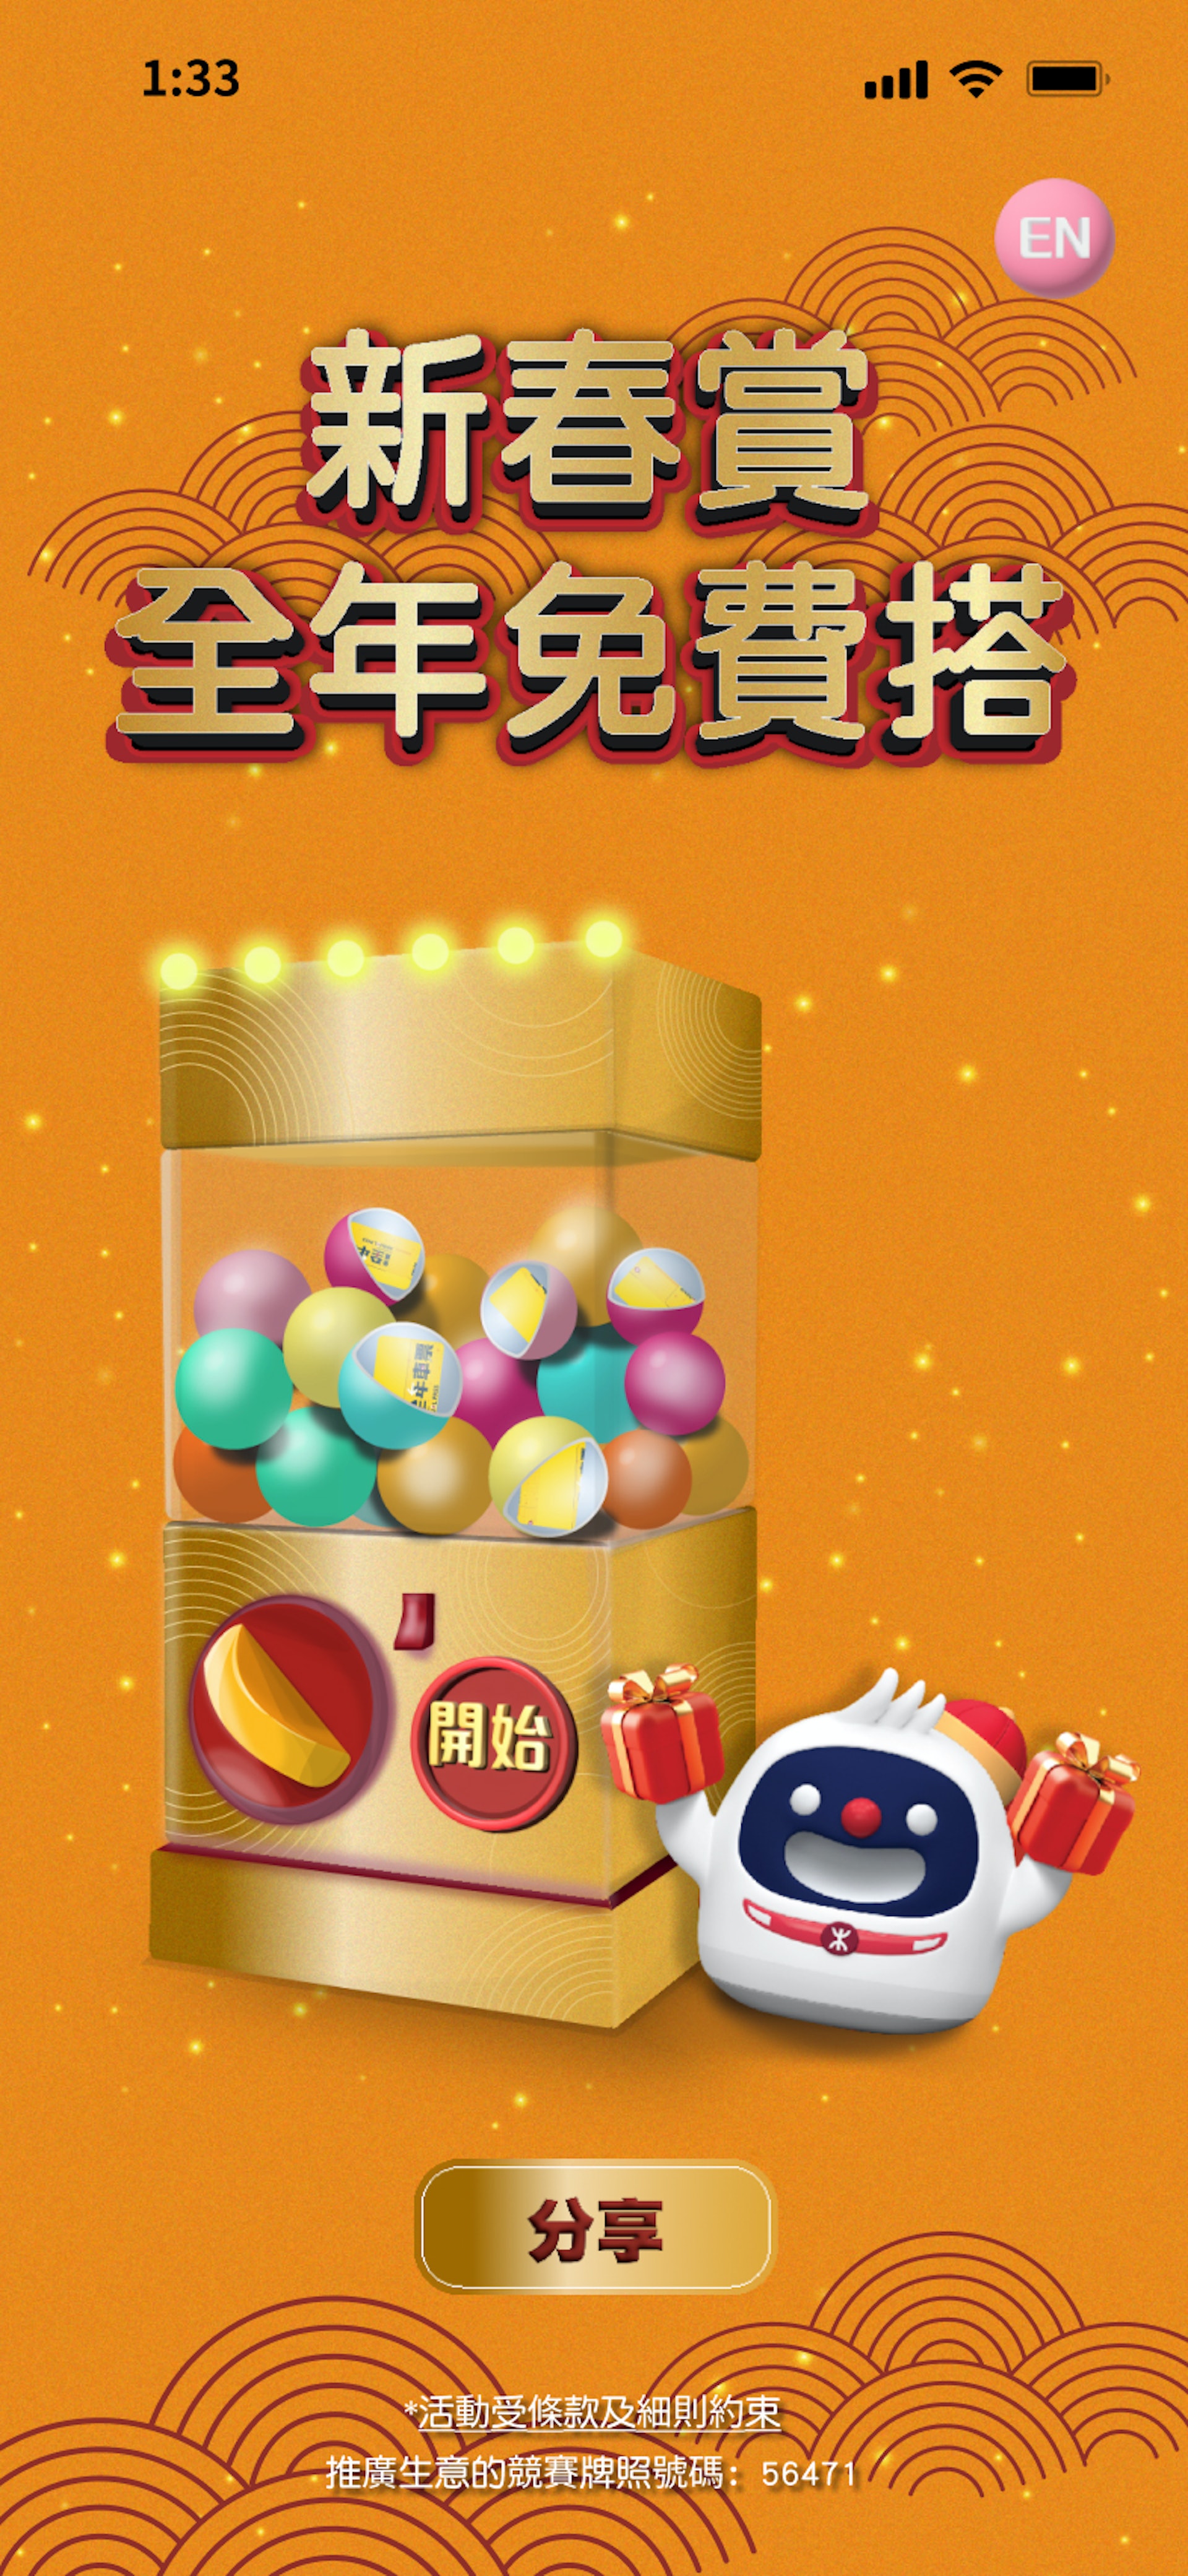 「新春賞・全年免費搭」的抽獎時間為每日上午9時至下午6時，並於MTR Mobile手機App內進行。